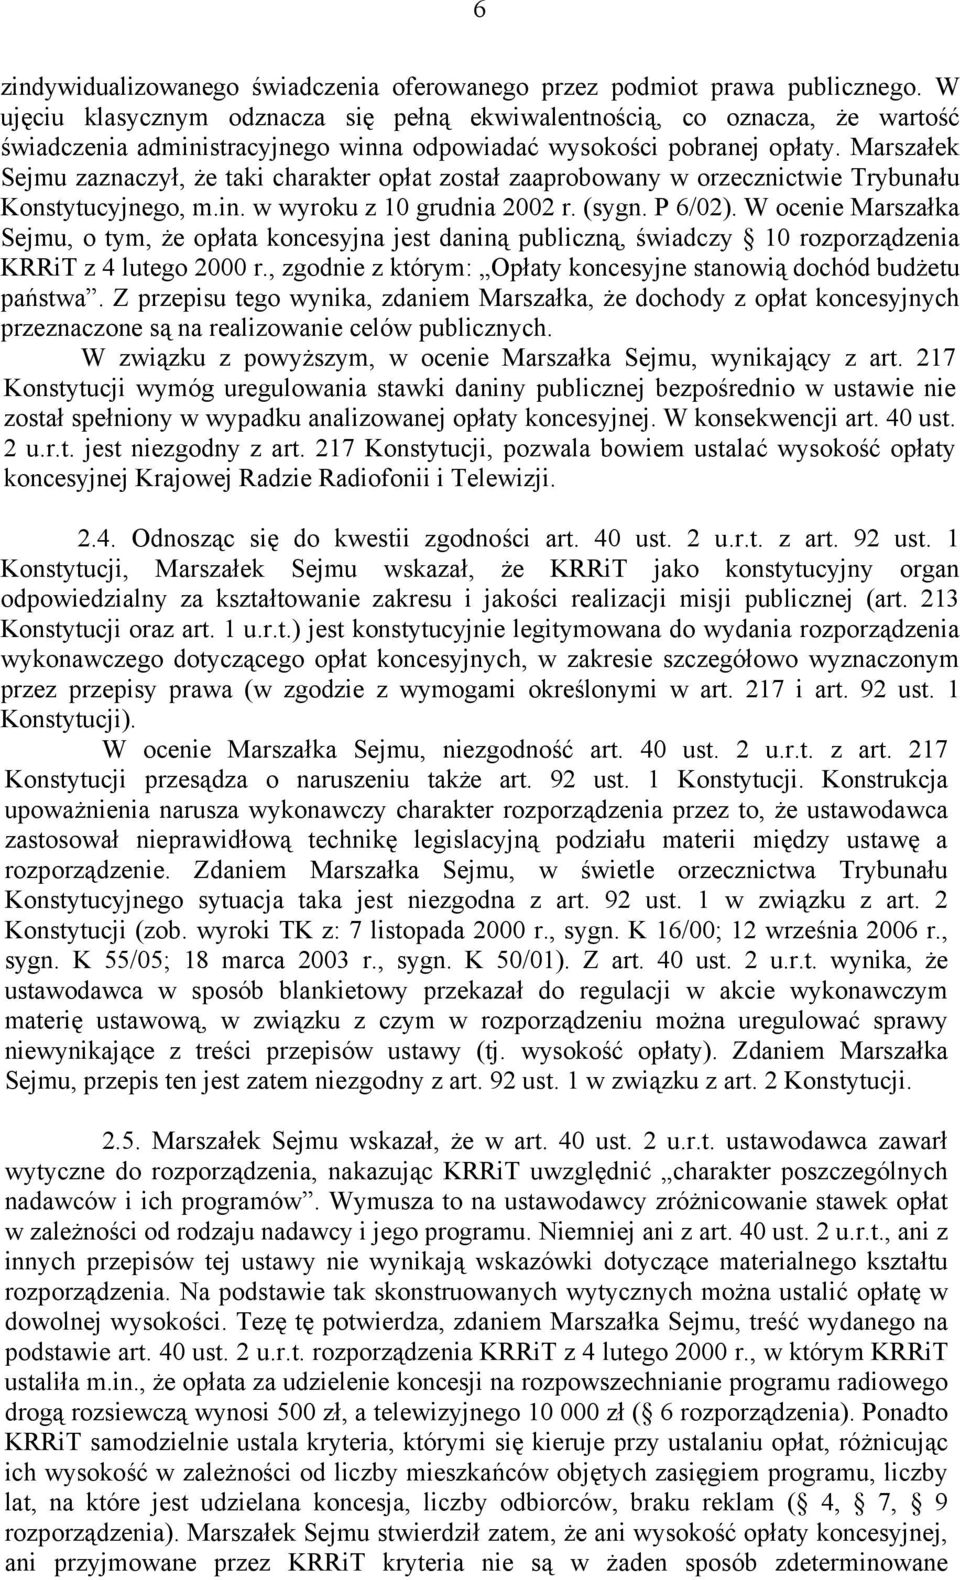 Marszałek Sejmu zaznaczył, że taki charakter opłat został zaaprobowany w orzecznictwie Trybunału Konstytucyjnego, m.in. w wyroku z 10 grudnia 2002 r. (sygn. P 6/02).